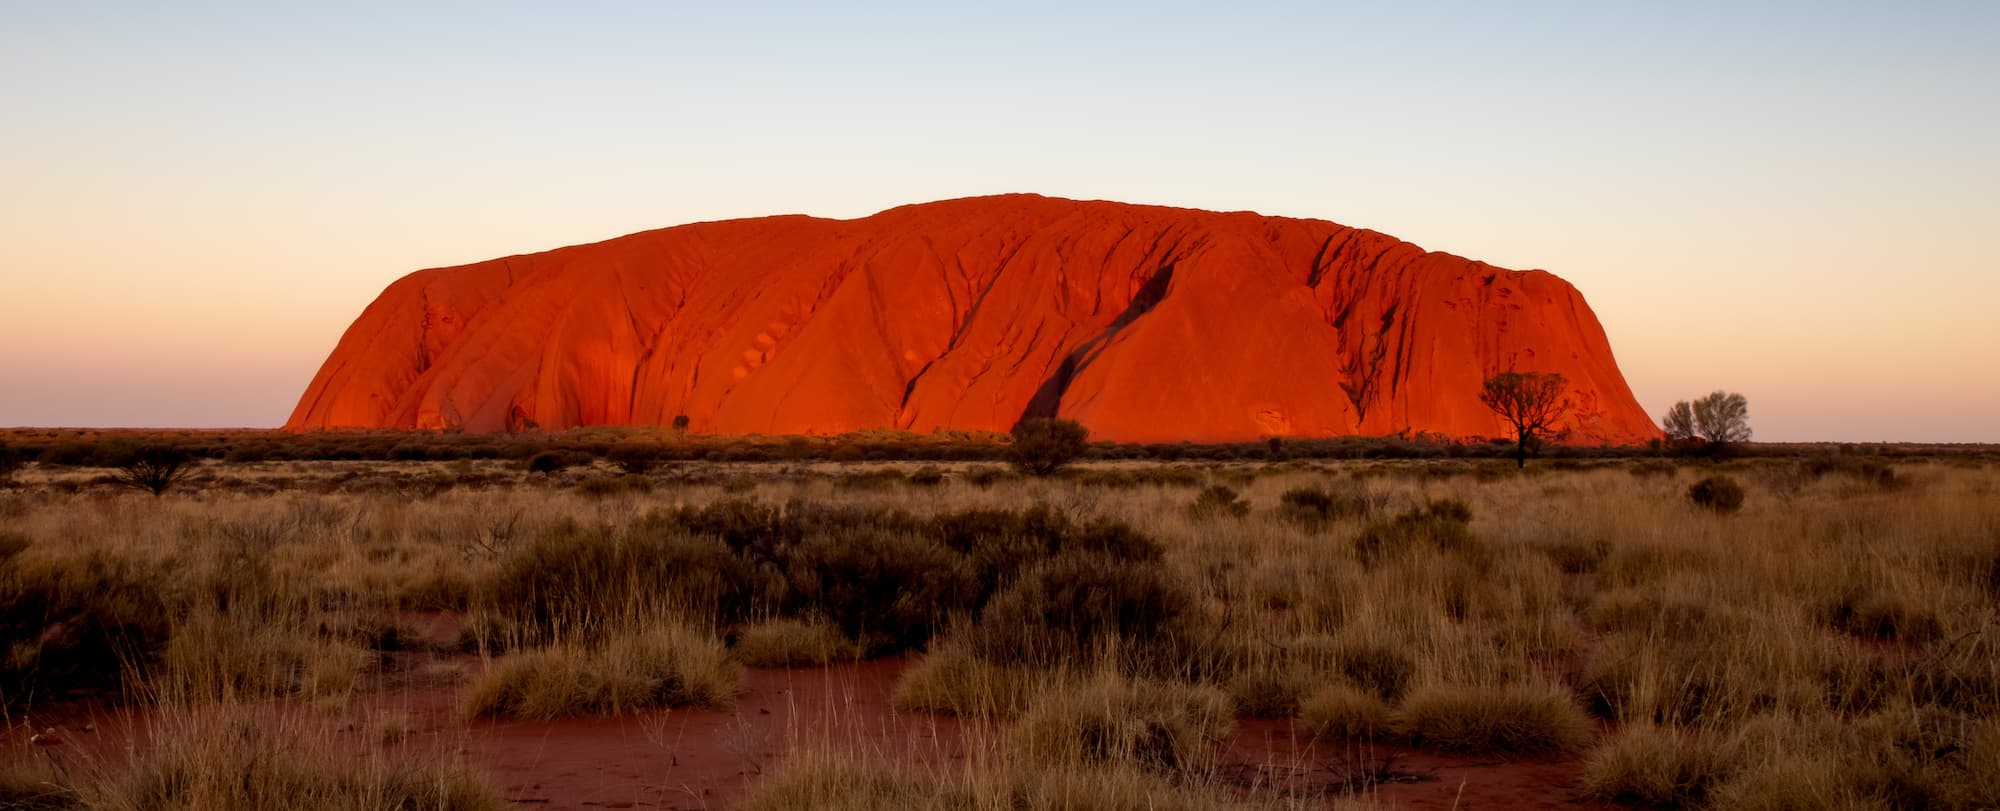 Northern Territory - Uluru